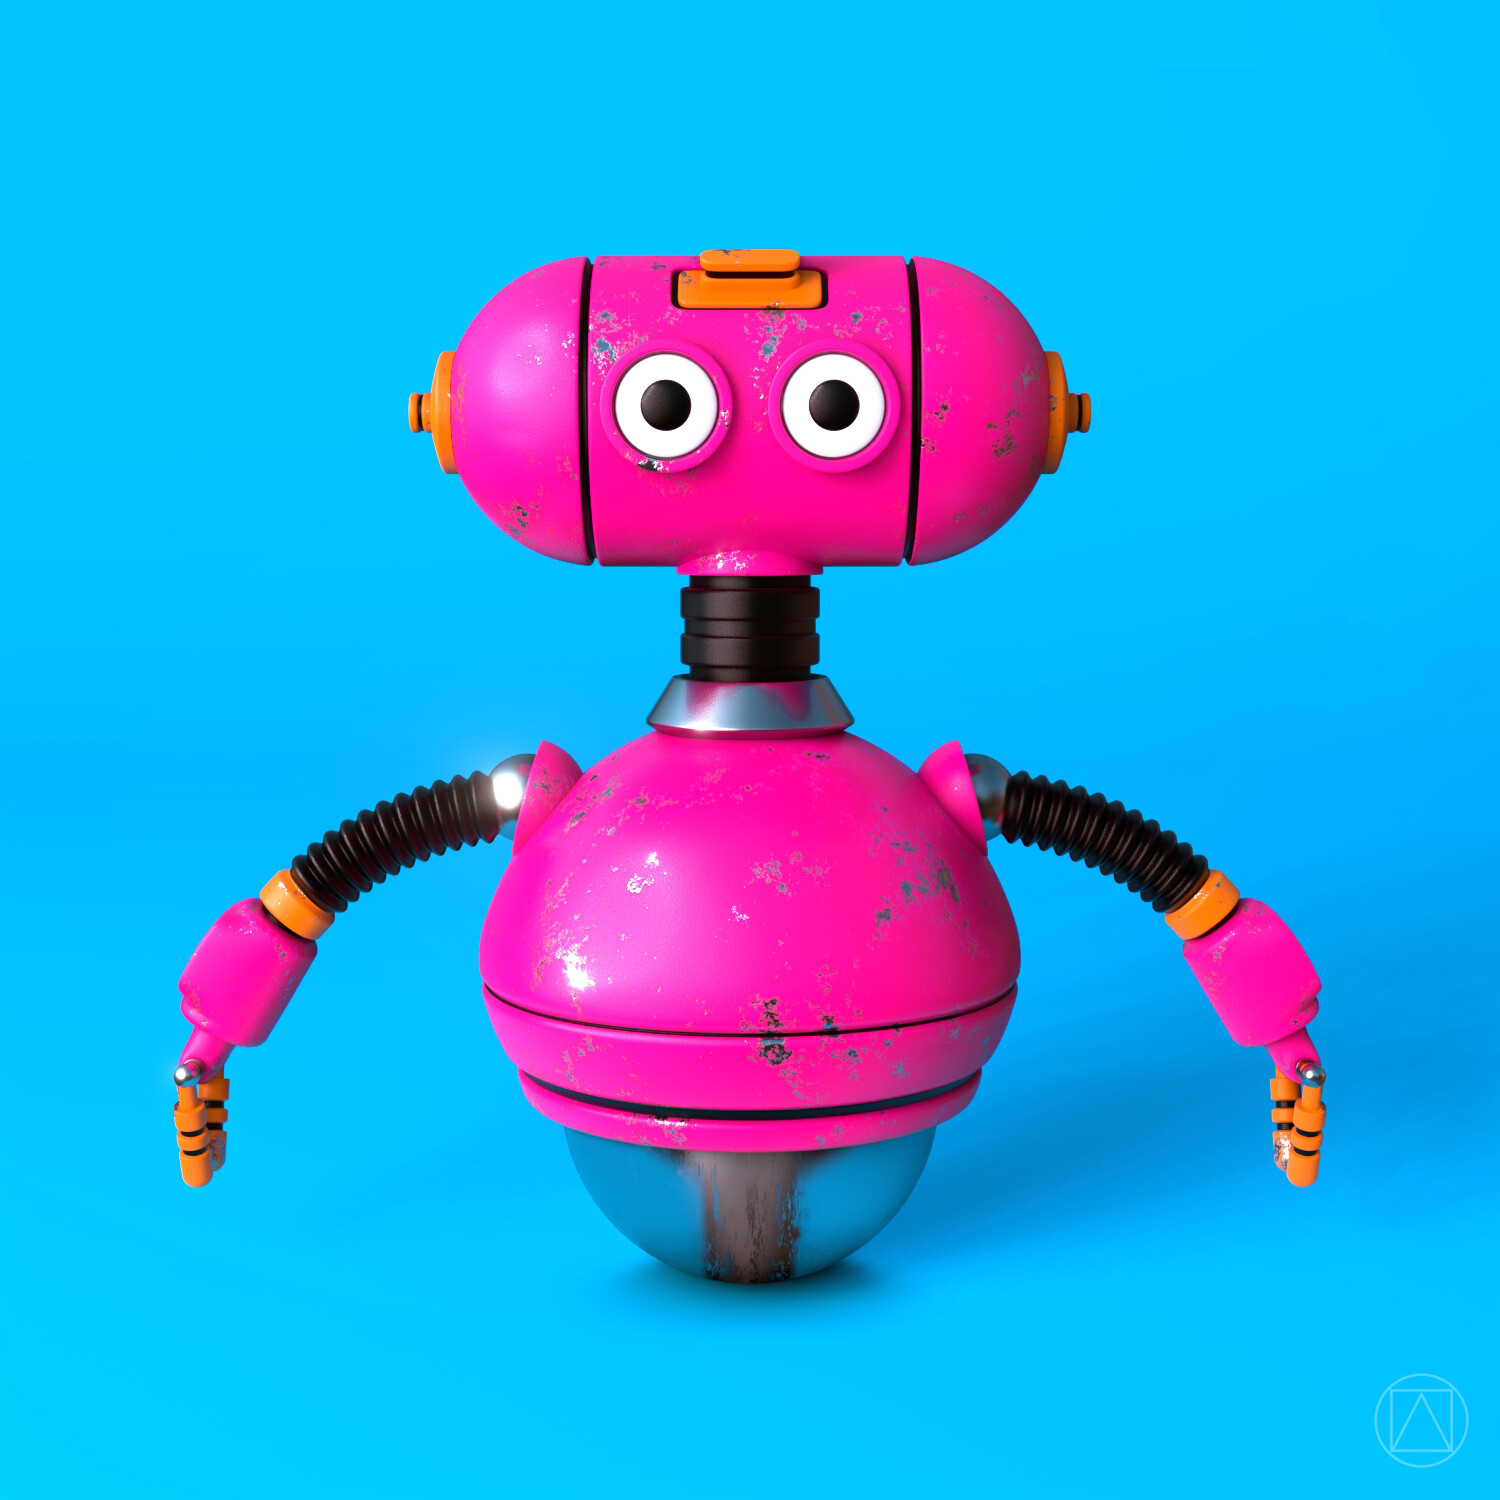 Pink robot